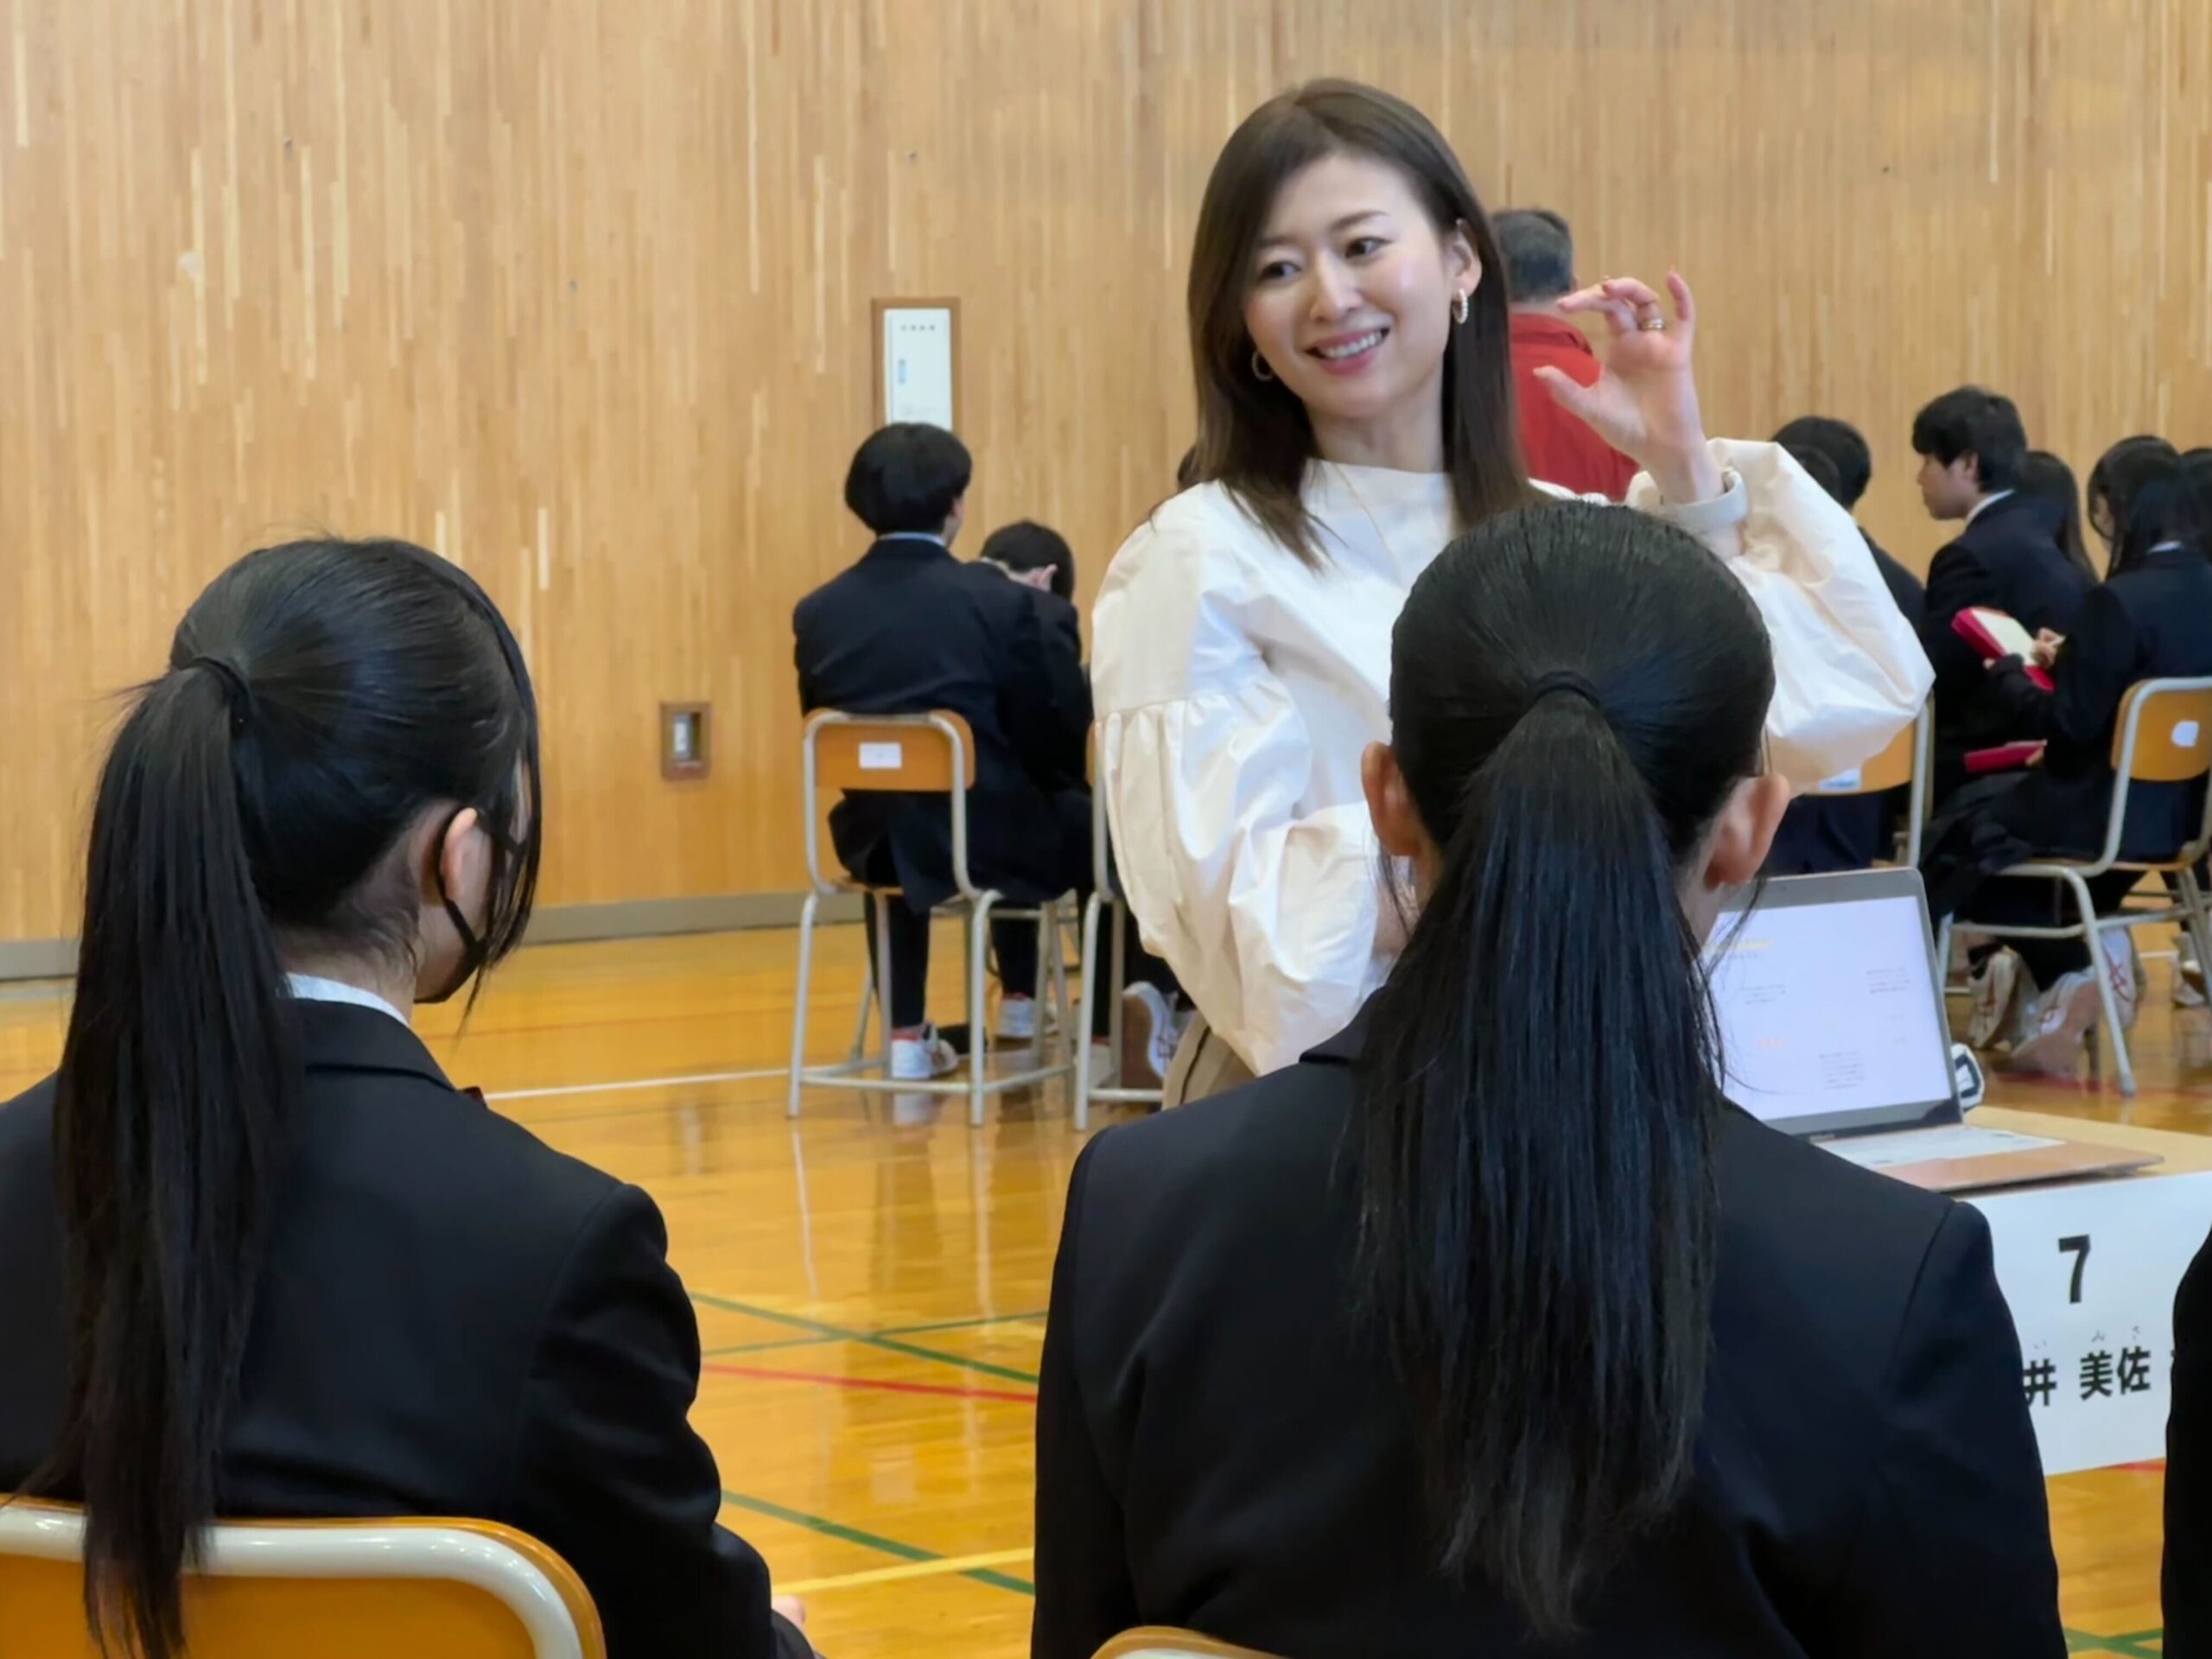 札幌東陵高校のキャリア教育の授業で国井美佐が特別講師を務めさせていただきました。